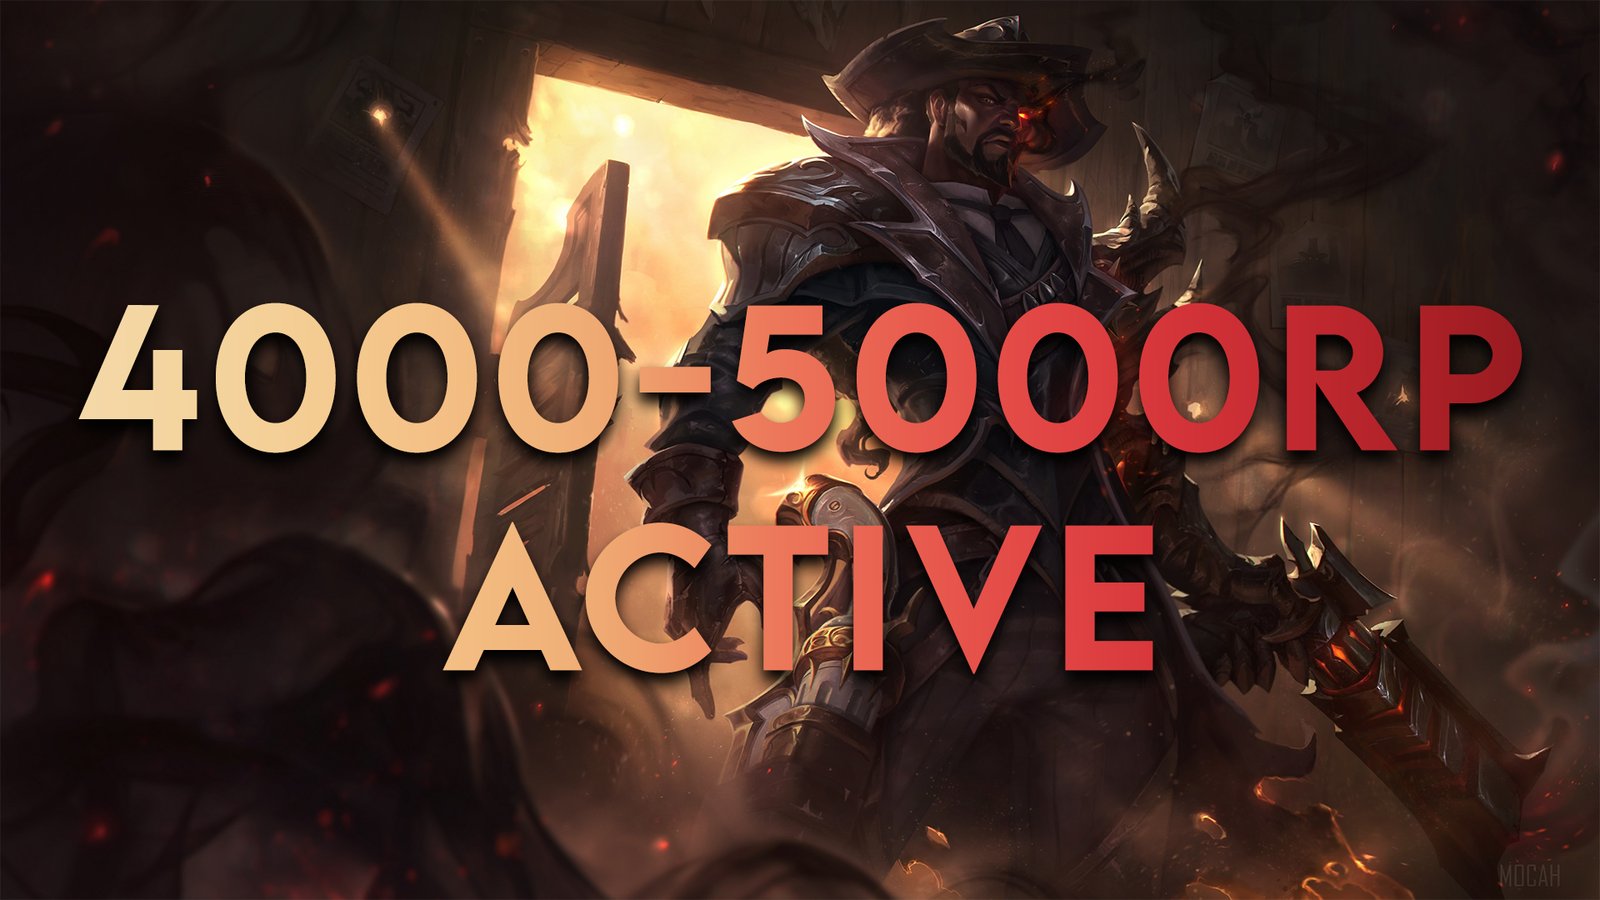 4000-5000RP Active    LAS